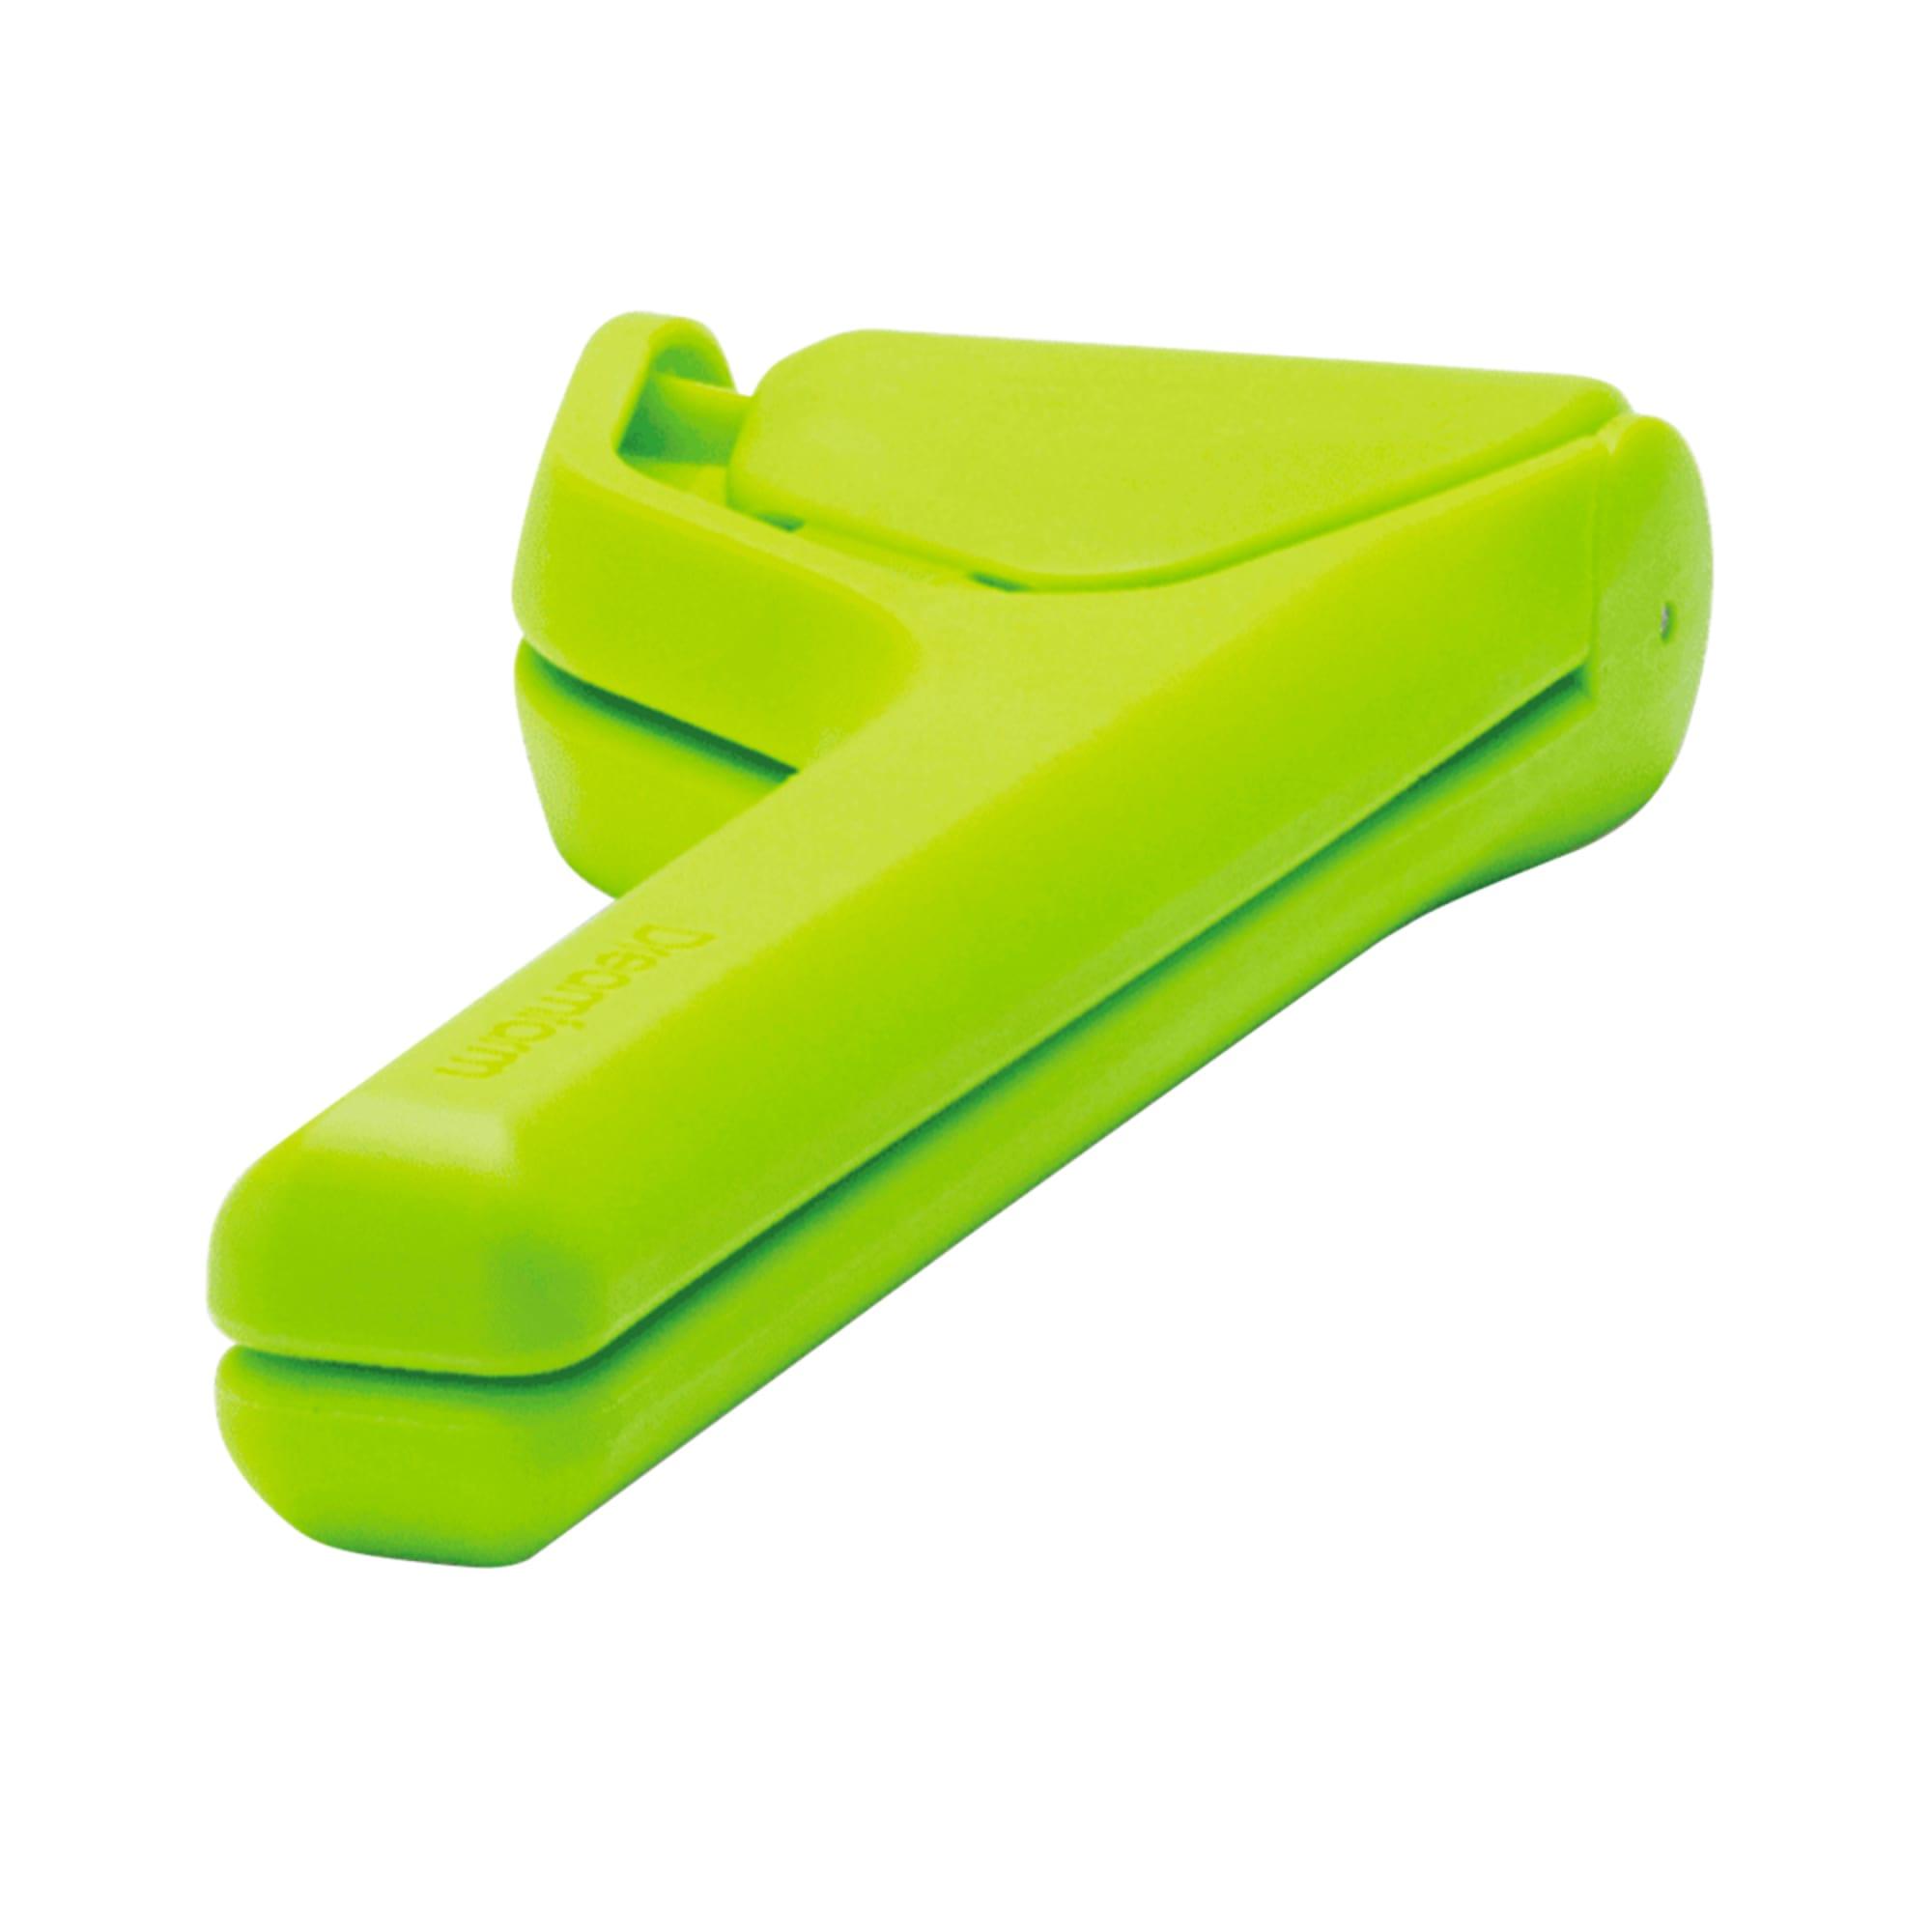 Dreamfarm Fluicer Fold Flat Easy Juicer Lime Image 3